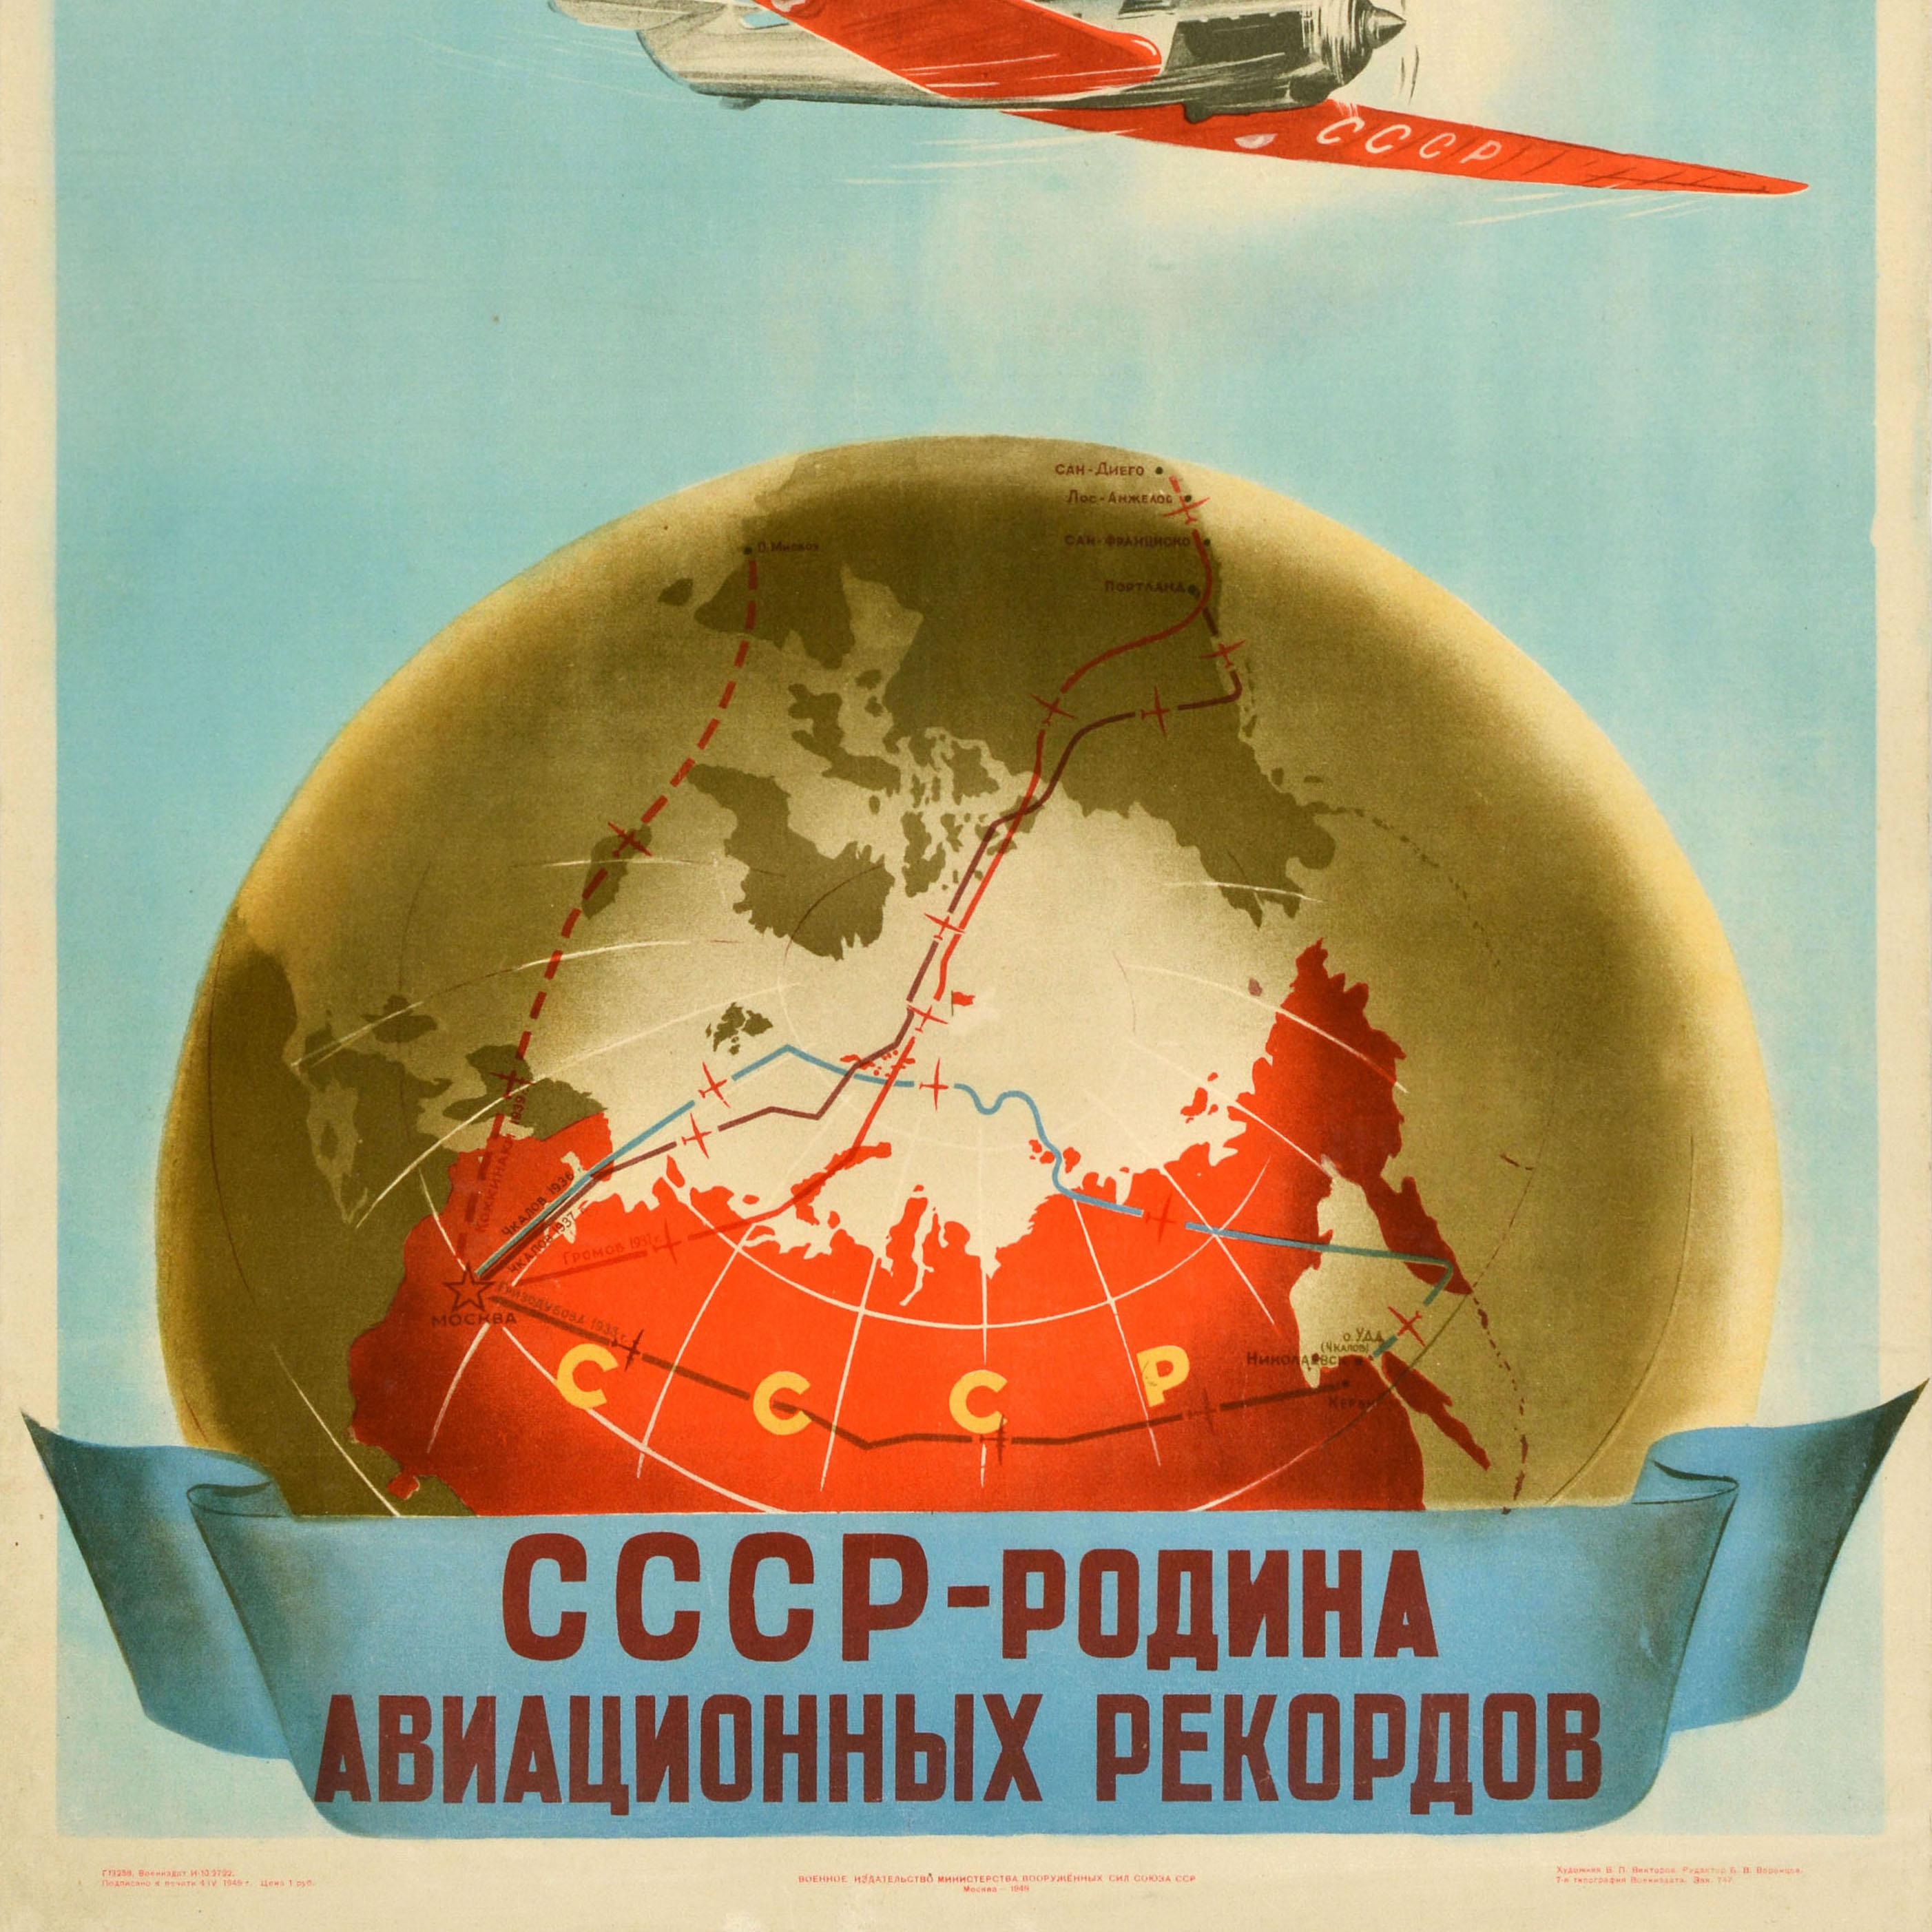 Original Vintage sowjetischen Propaganda-Plakat - Athleten Piloten der freiwilligen Gesellschaft zur Förderung der Luftfahrt Steigern Sie den Ruhm der Stalin-Luftfahrt UdSSR Die Geburtsstätte der Luftfahrt Rekorde - mit einer Illustration eines